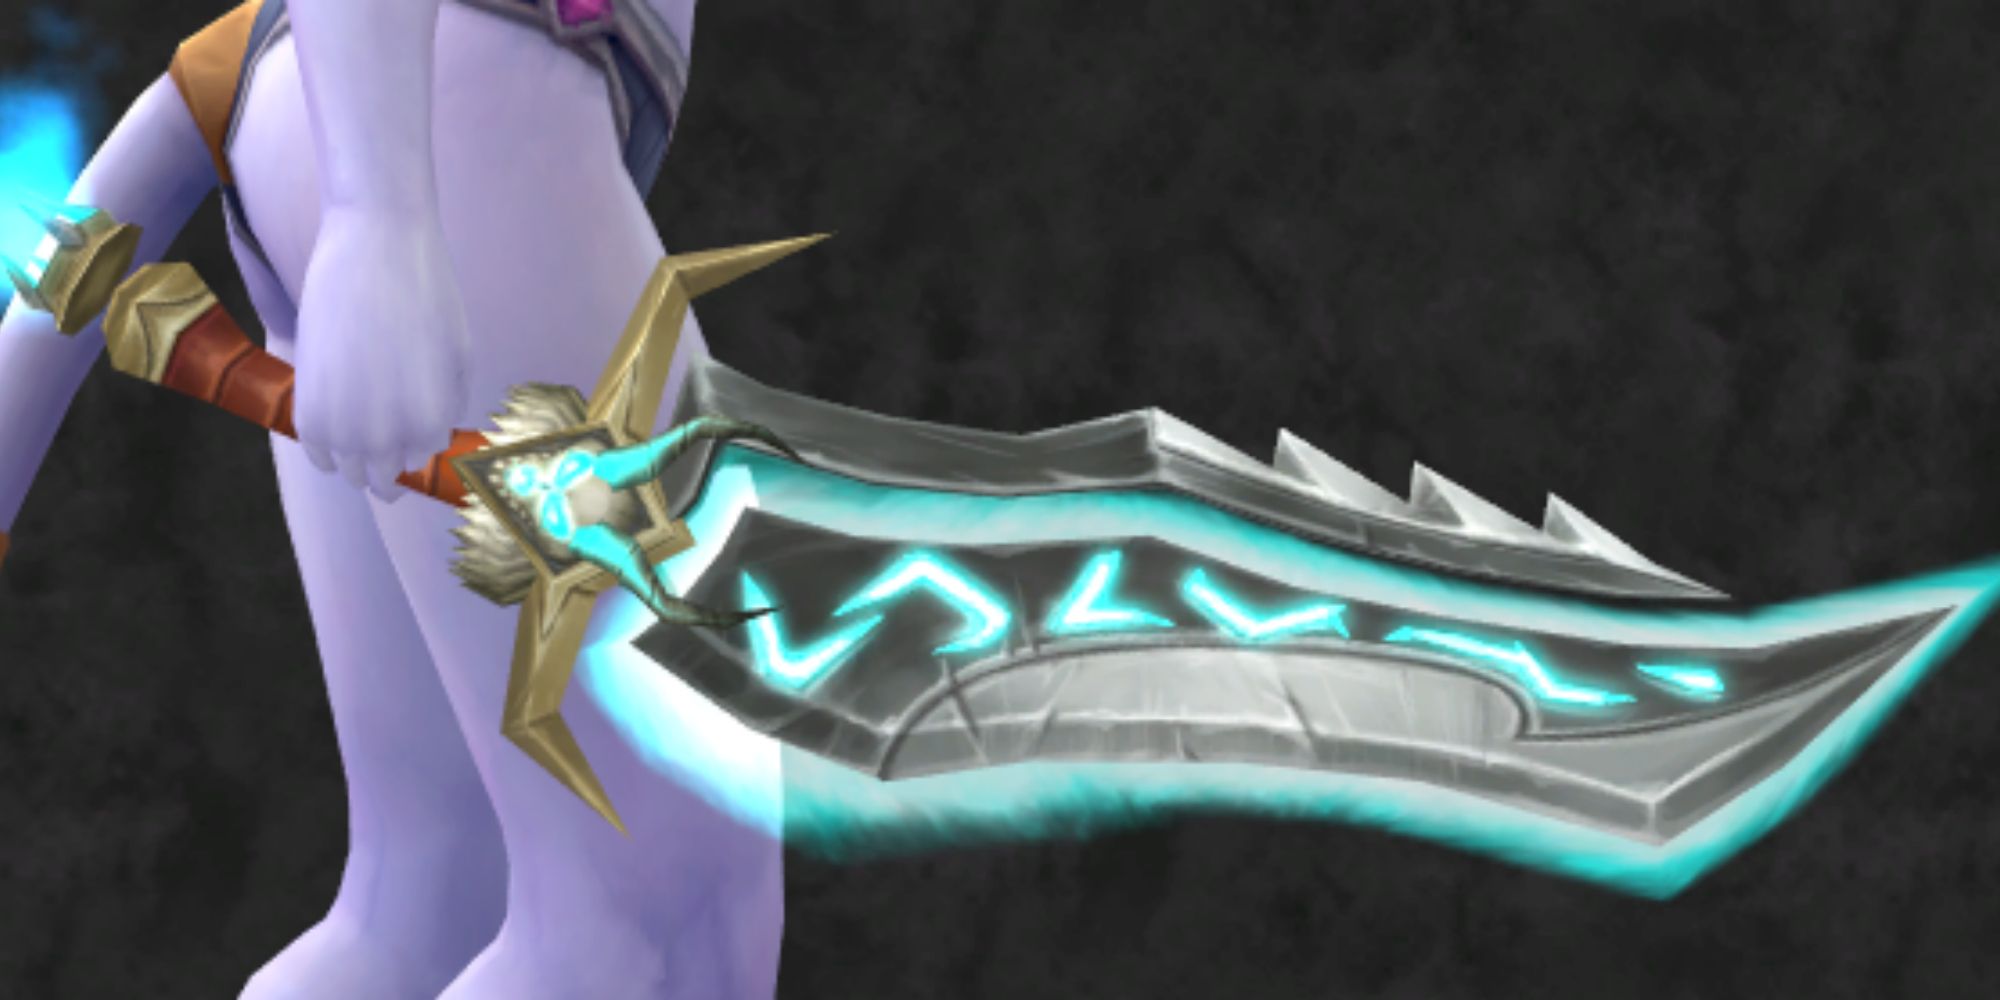 World of Warcraft Bloodsurge, Kel’Thuzad’s Blade Of Agony sword